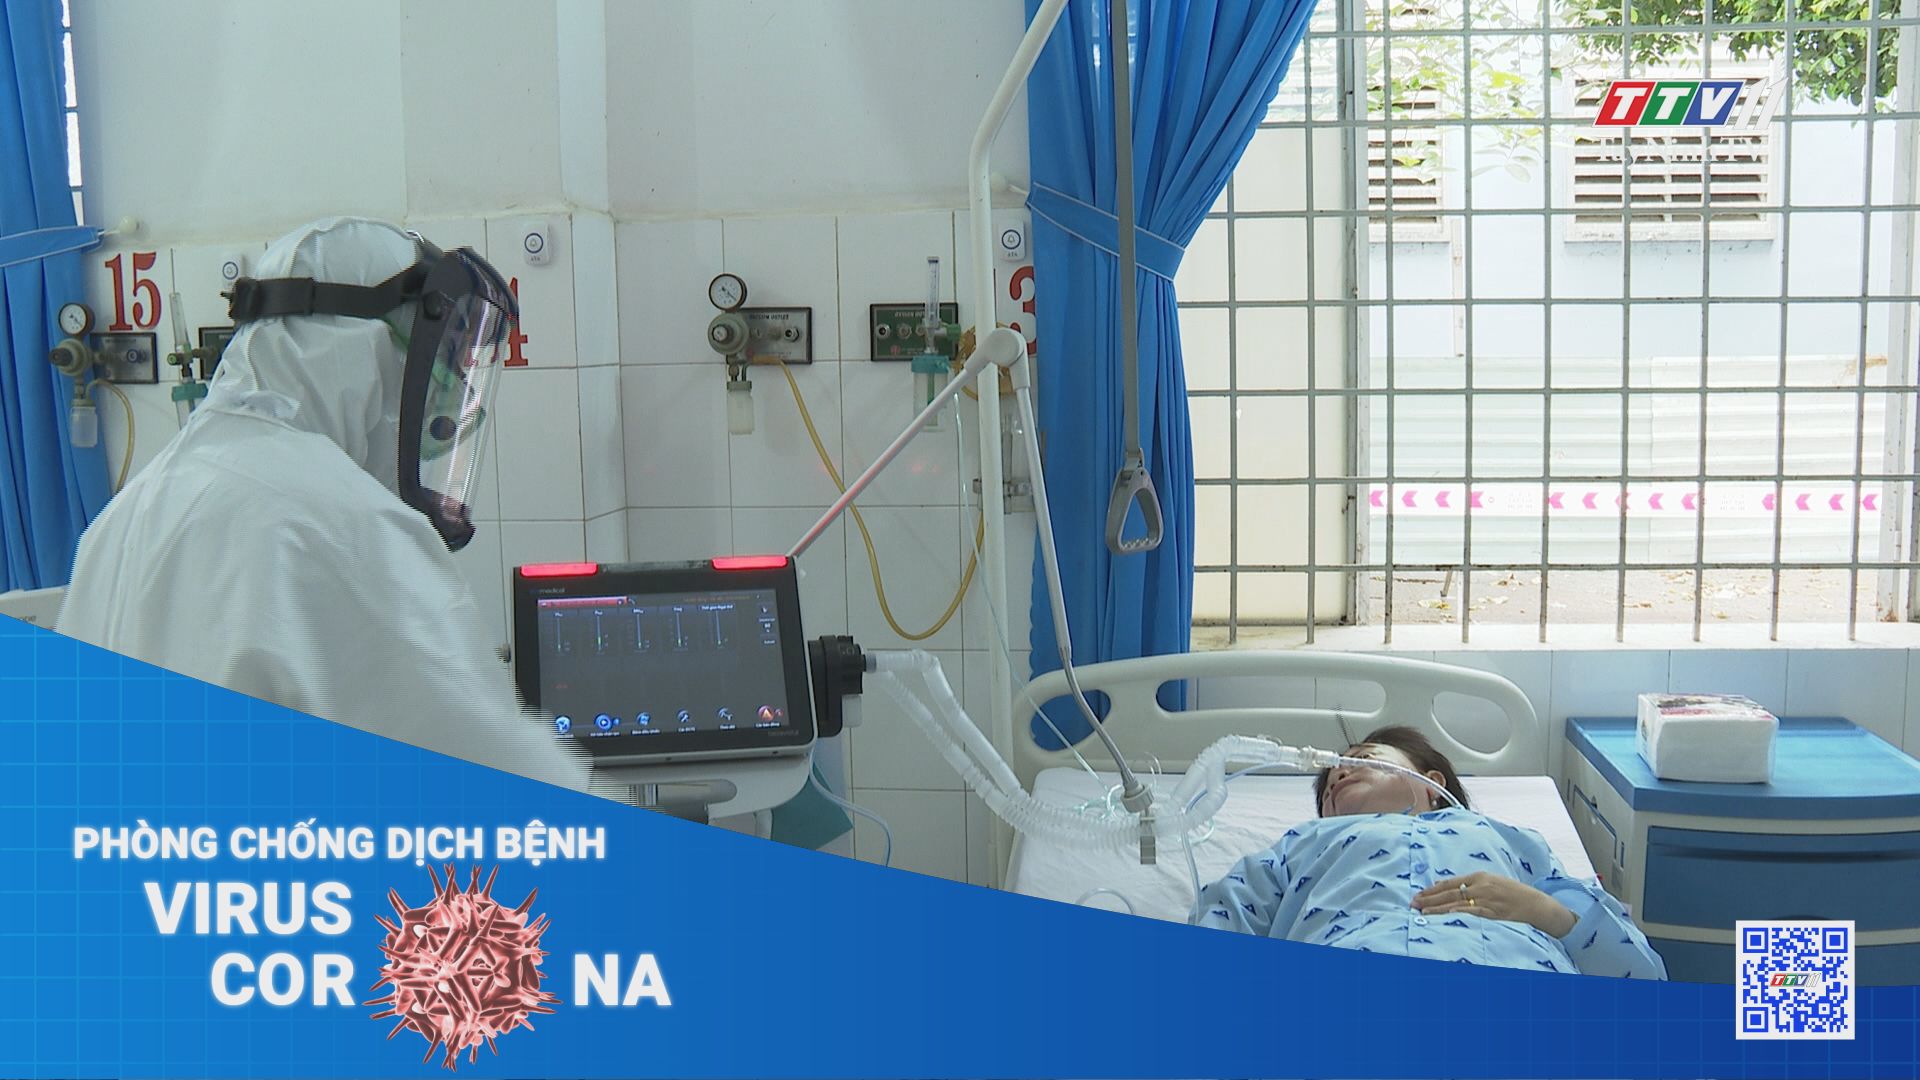 Tây Ninh kiểm soát chặt chẽ dịch bệnh trong cộng đồng | THÔNG TIN DỊCH CÚM COVID-19 | TayNinhTV 